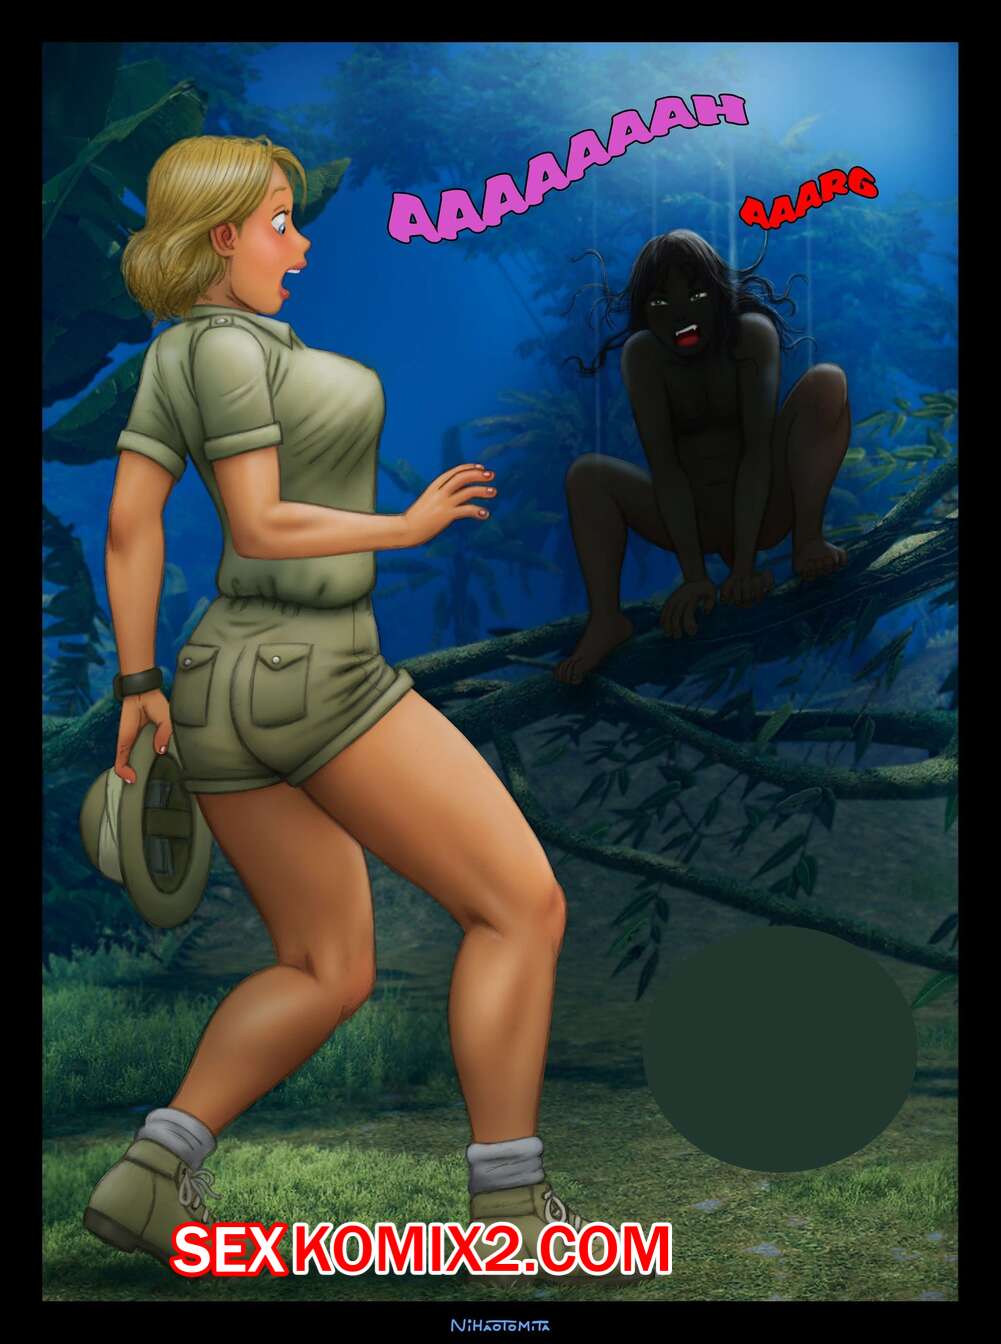 Девушка голая в джунглях 18+ - обои и картинки на рабочий стол